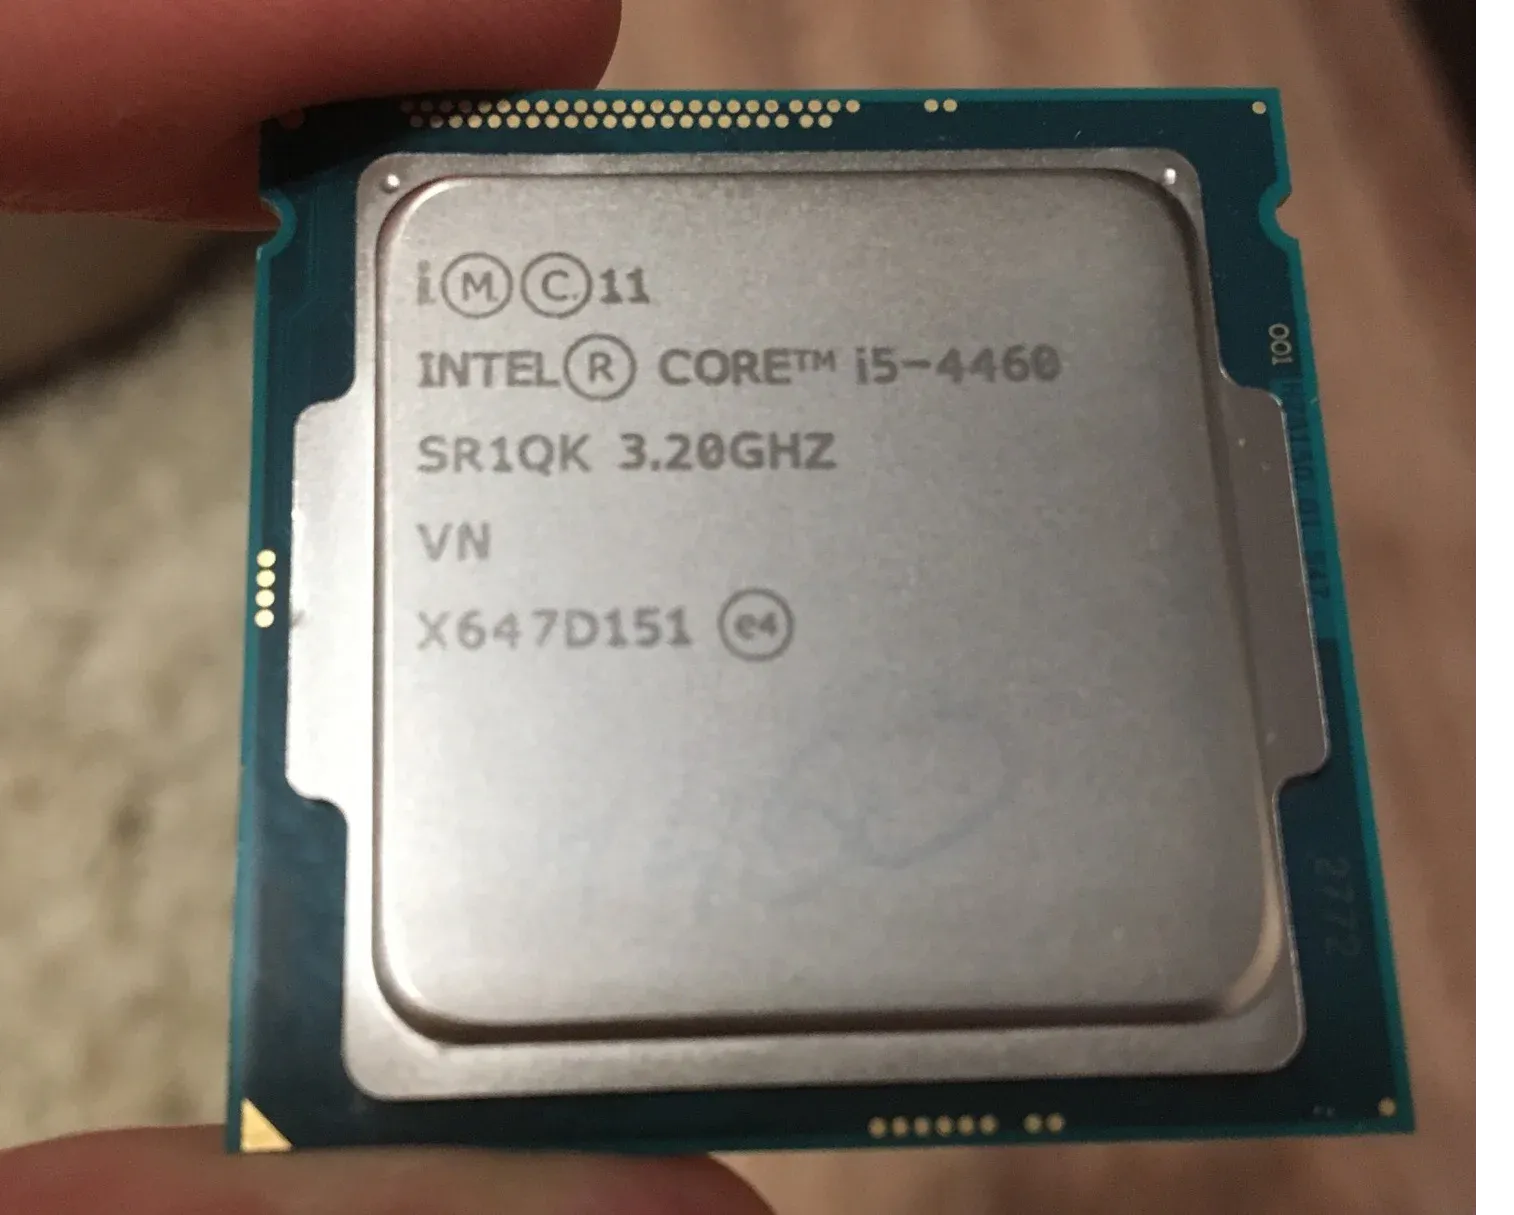 Купить процессор интел 5. Intel Core i5-4460. I5 4460. I5 4460 характеристики. I5 4460- 4 ядра 3.2Гц.